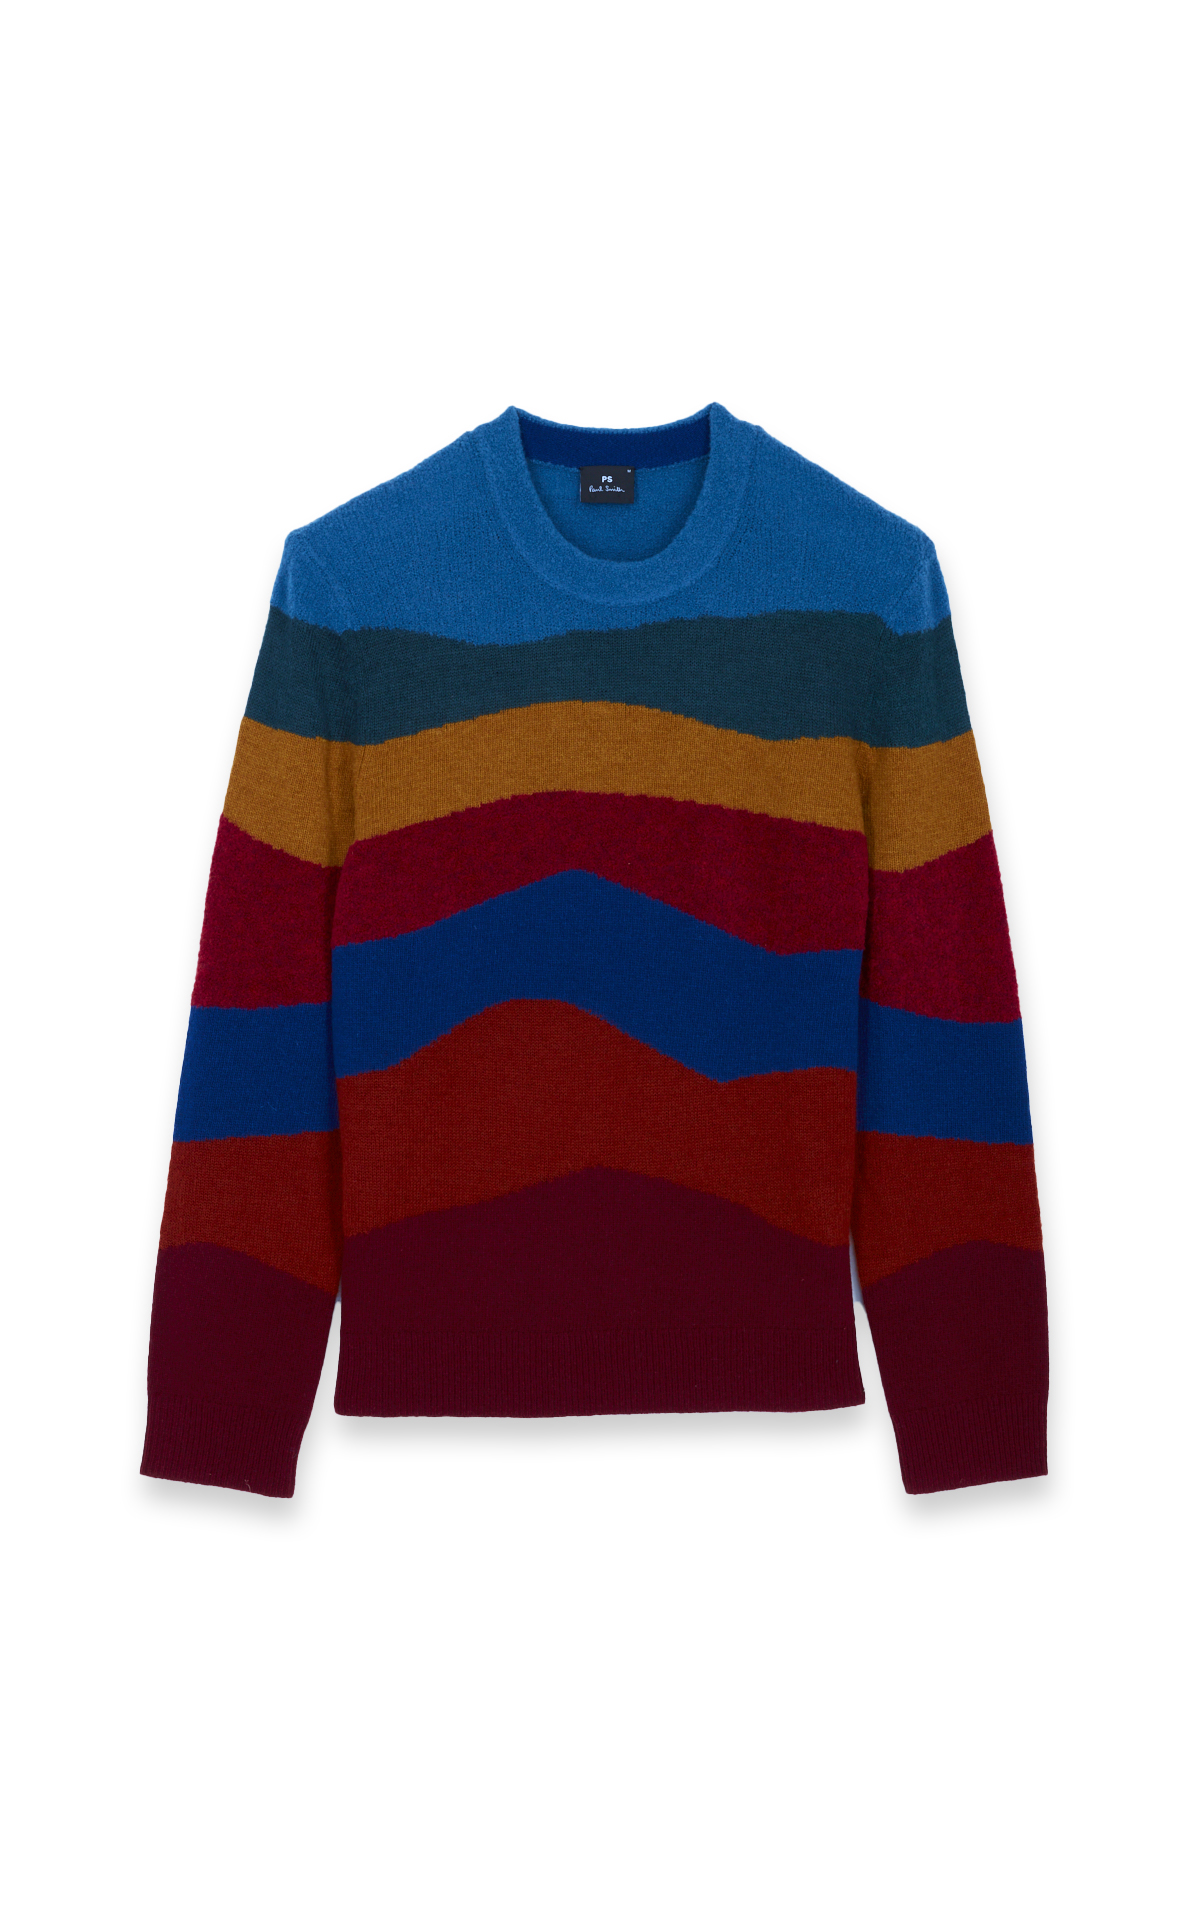 Multicoloured striped jumper*